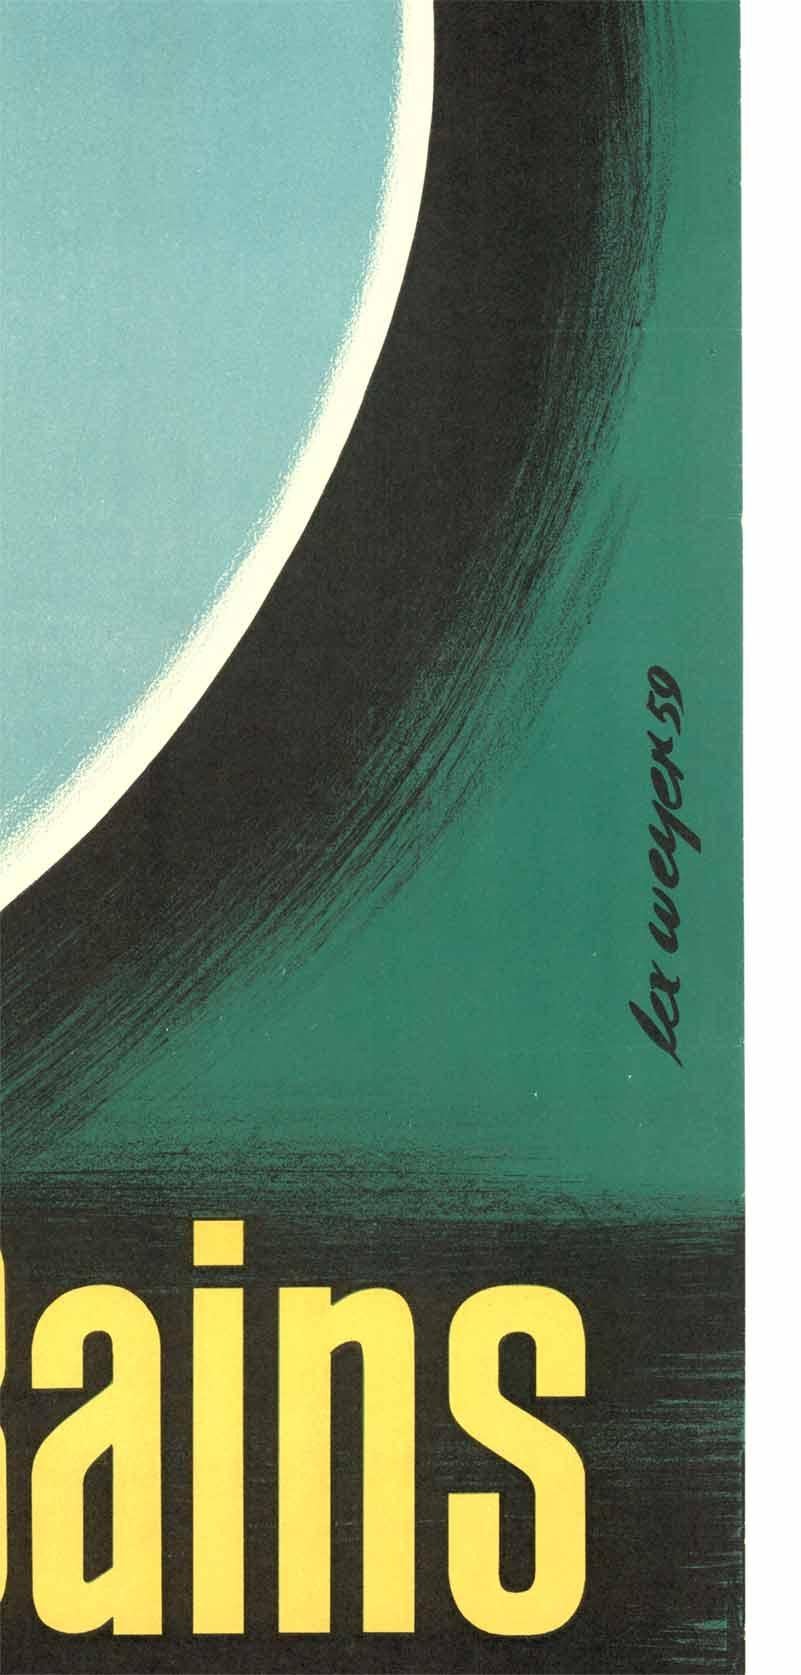 Original Mondorf-les-Baines-Lithographie des Künstlers Lex Weyer aus dem Jahr 1959.   Leinenrücken in sehr gutem bis ausgezeichnetem Zustand; rahmenfertig.    Großherzog von Luxemburg.  Lithografie.   Künstler Lex Weyer.

Mondorf les Bains ist ein